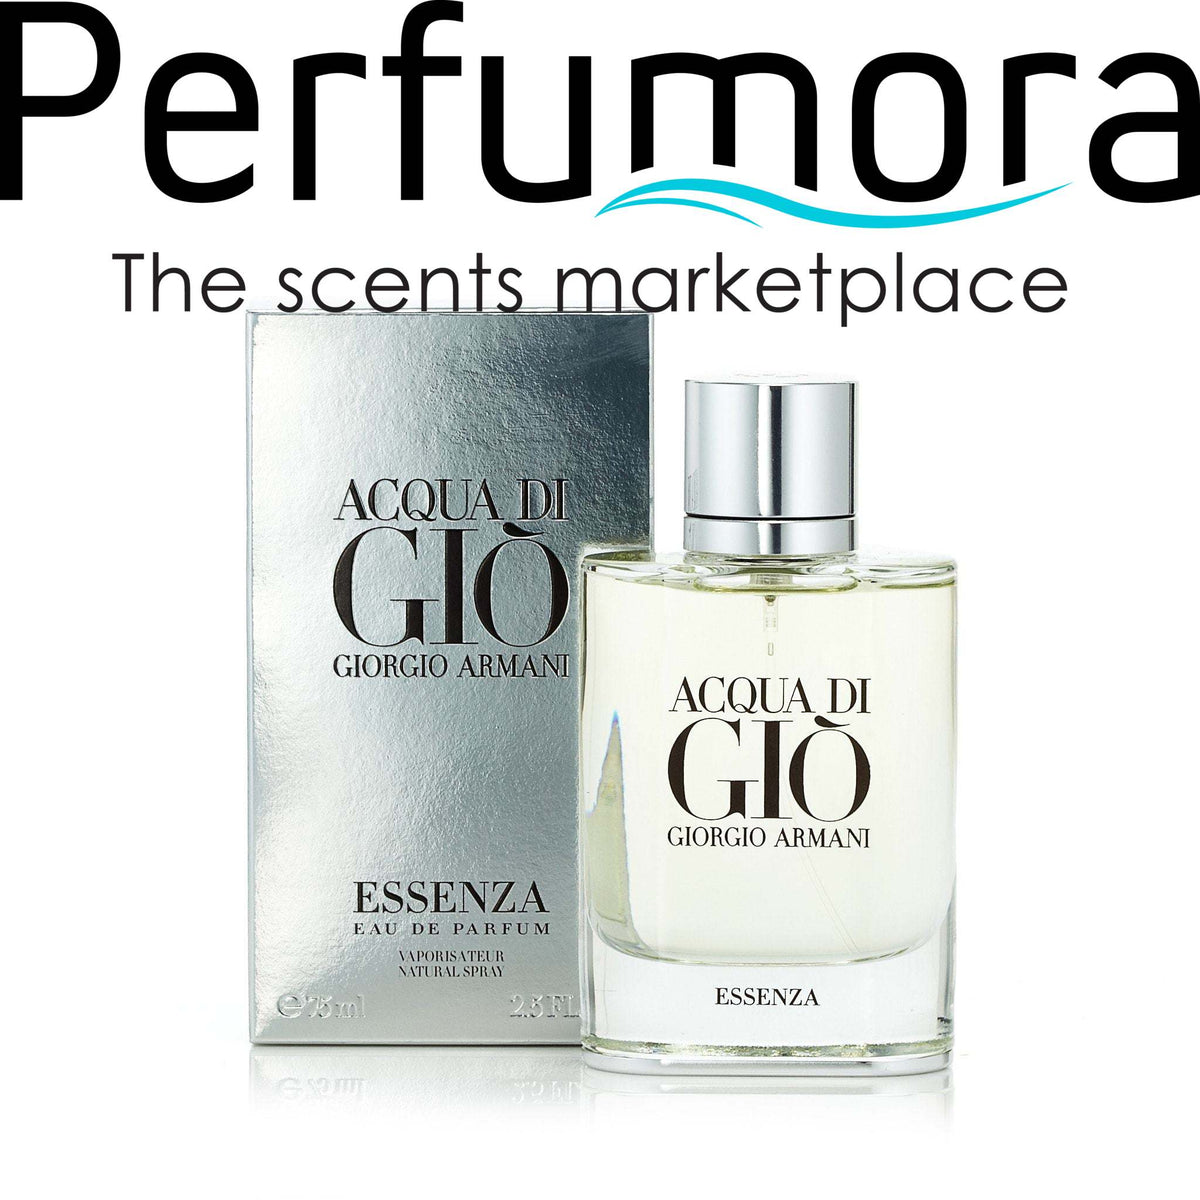 Acqua Di Gio Essenza Eau de Parfum Spray for Men by Giorgio Armani 2.5 oz.